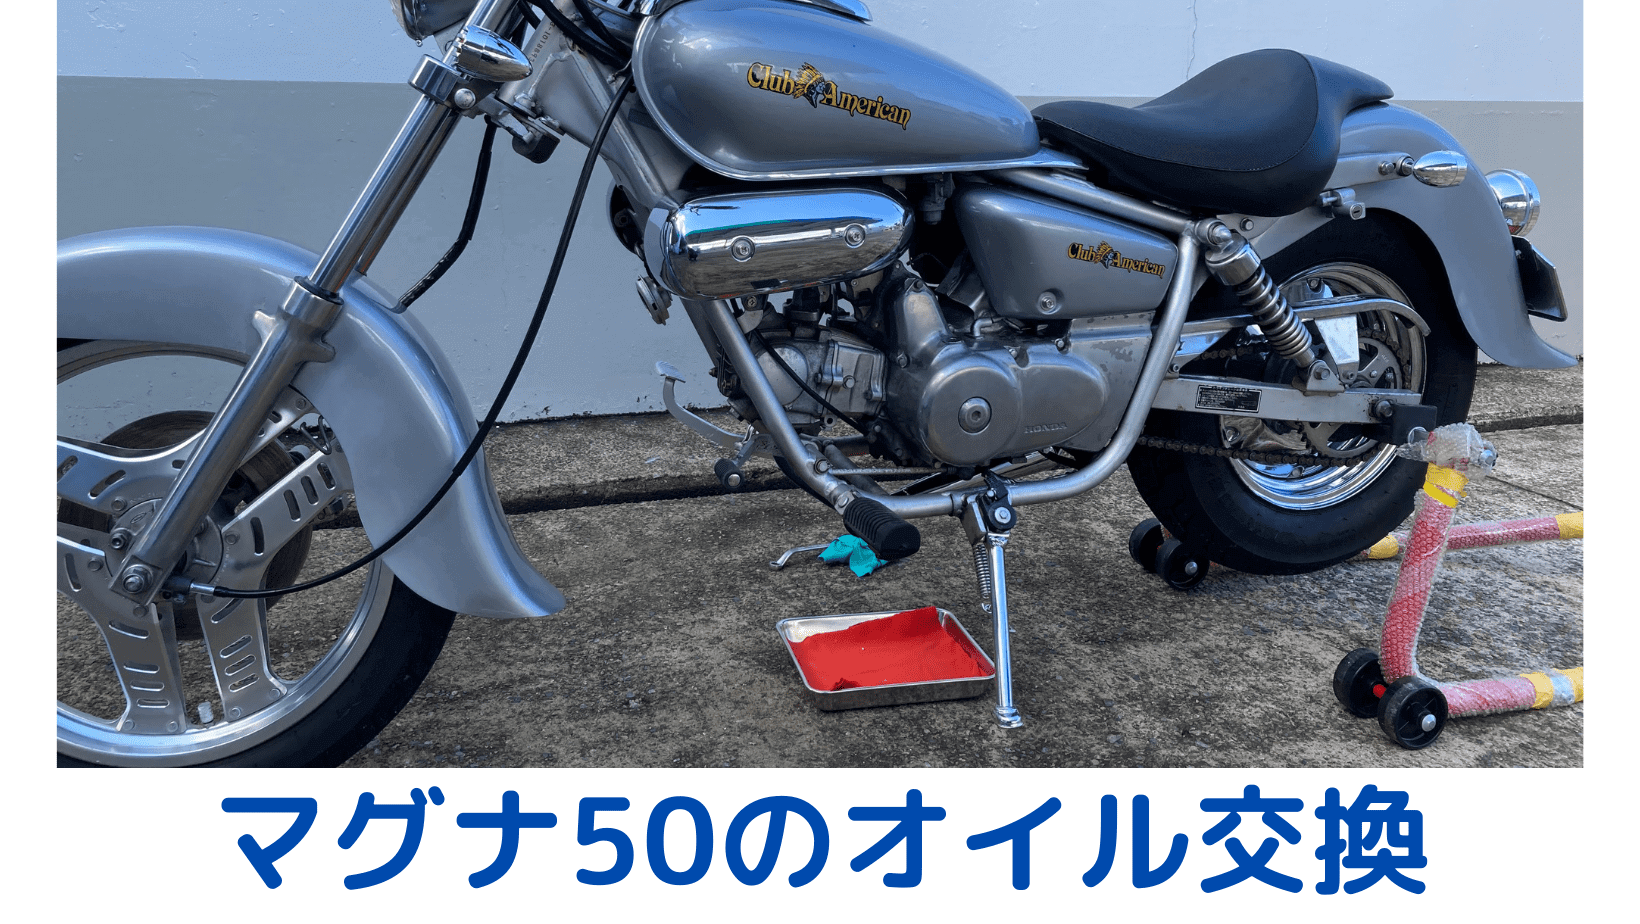 売れ筋ランキング マグナ50 〜取り置き中〜 車体 - LITTLEHEROESDENTISTRY